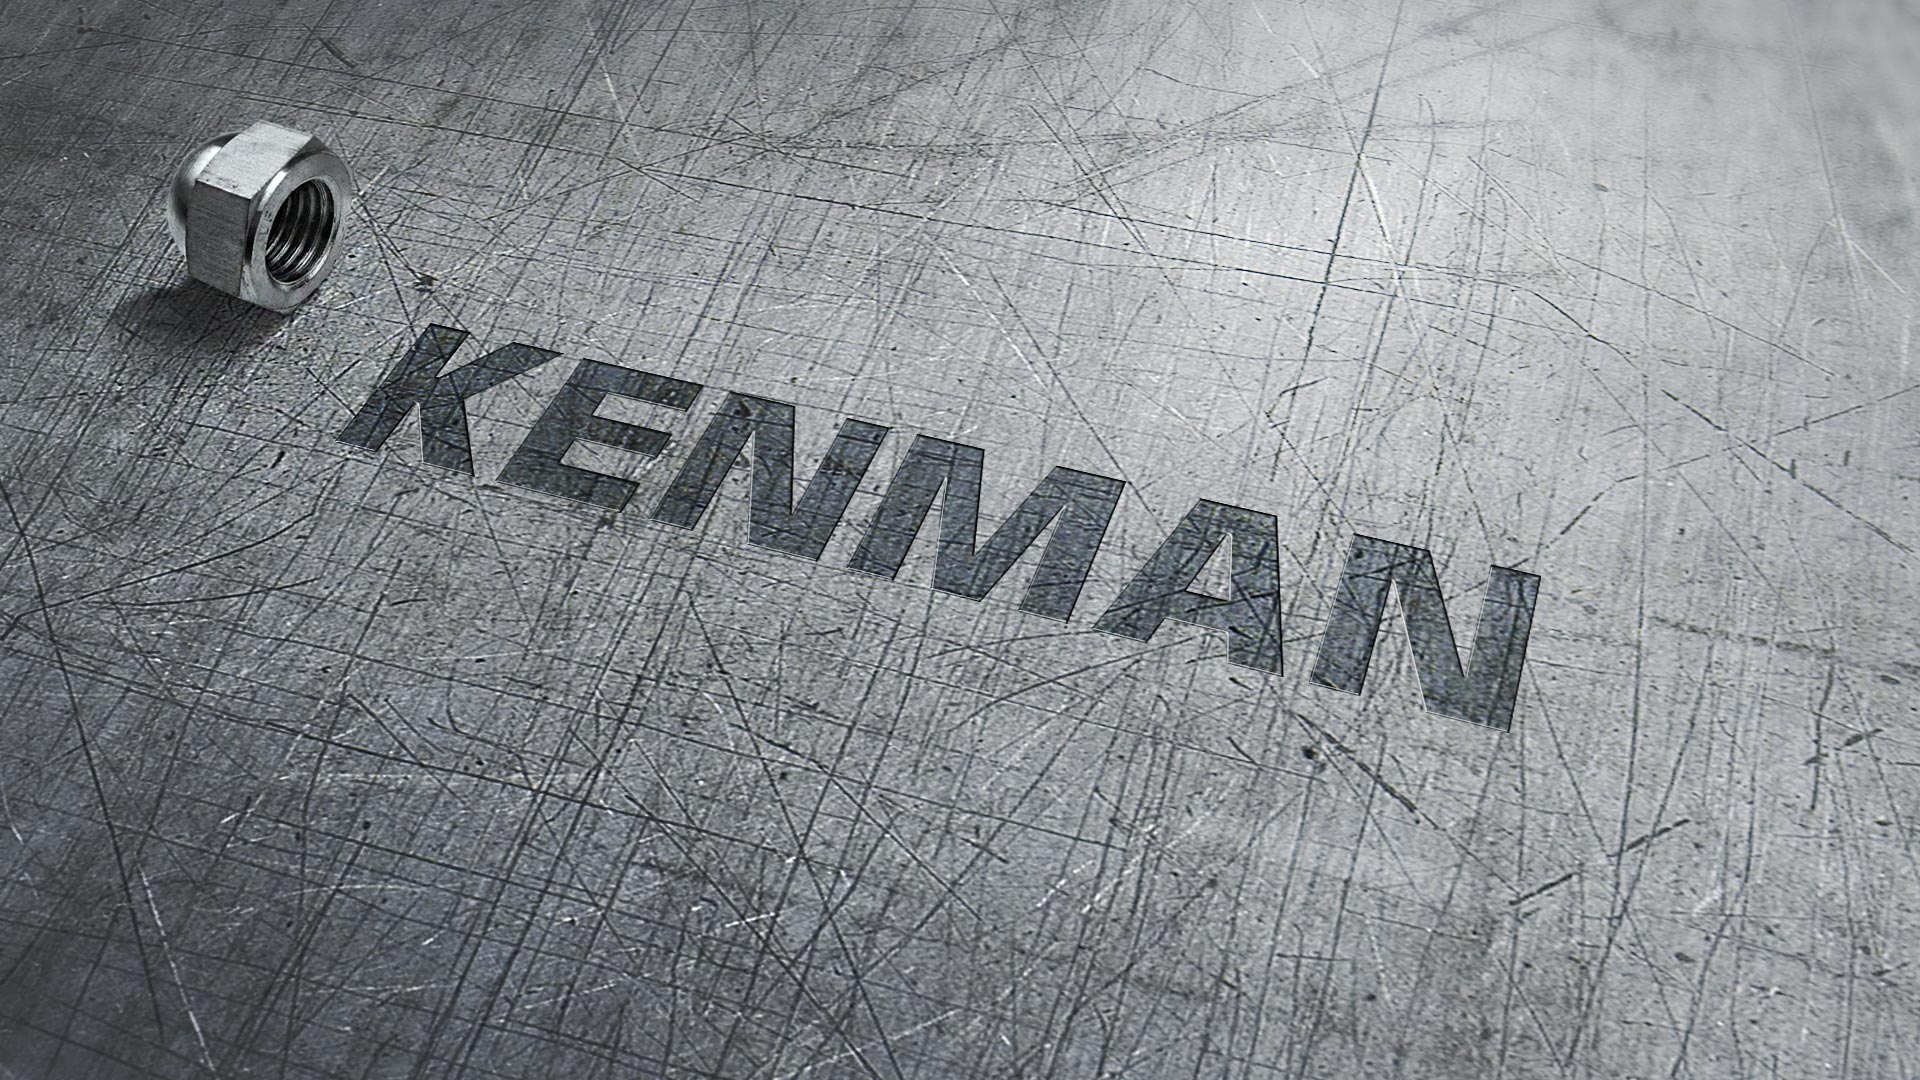 Логотип и фирменный стиль для компании KENMAN